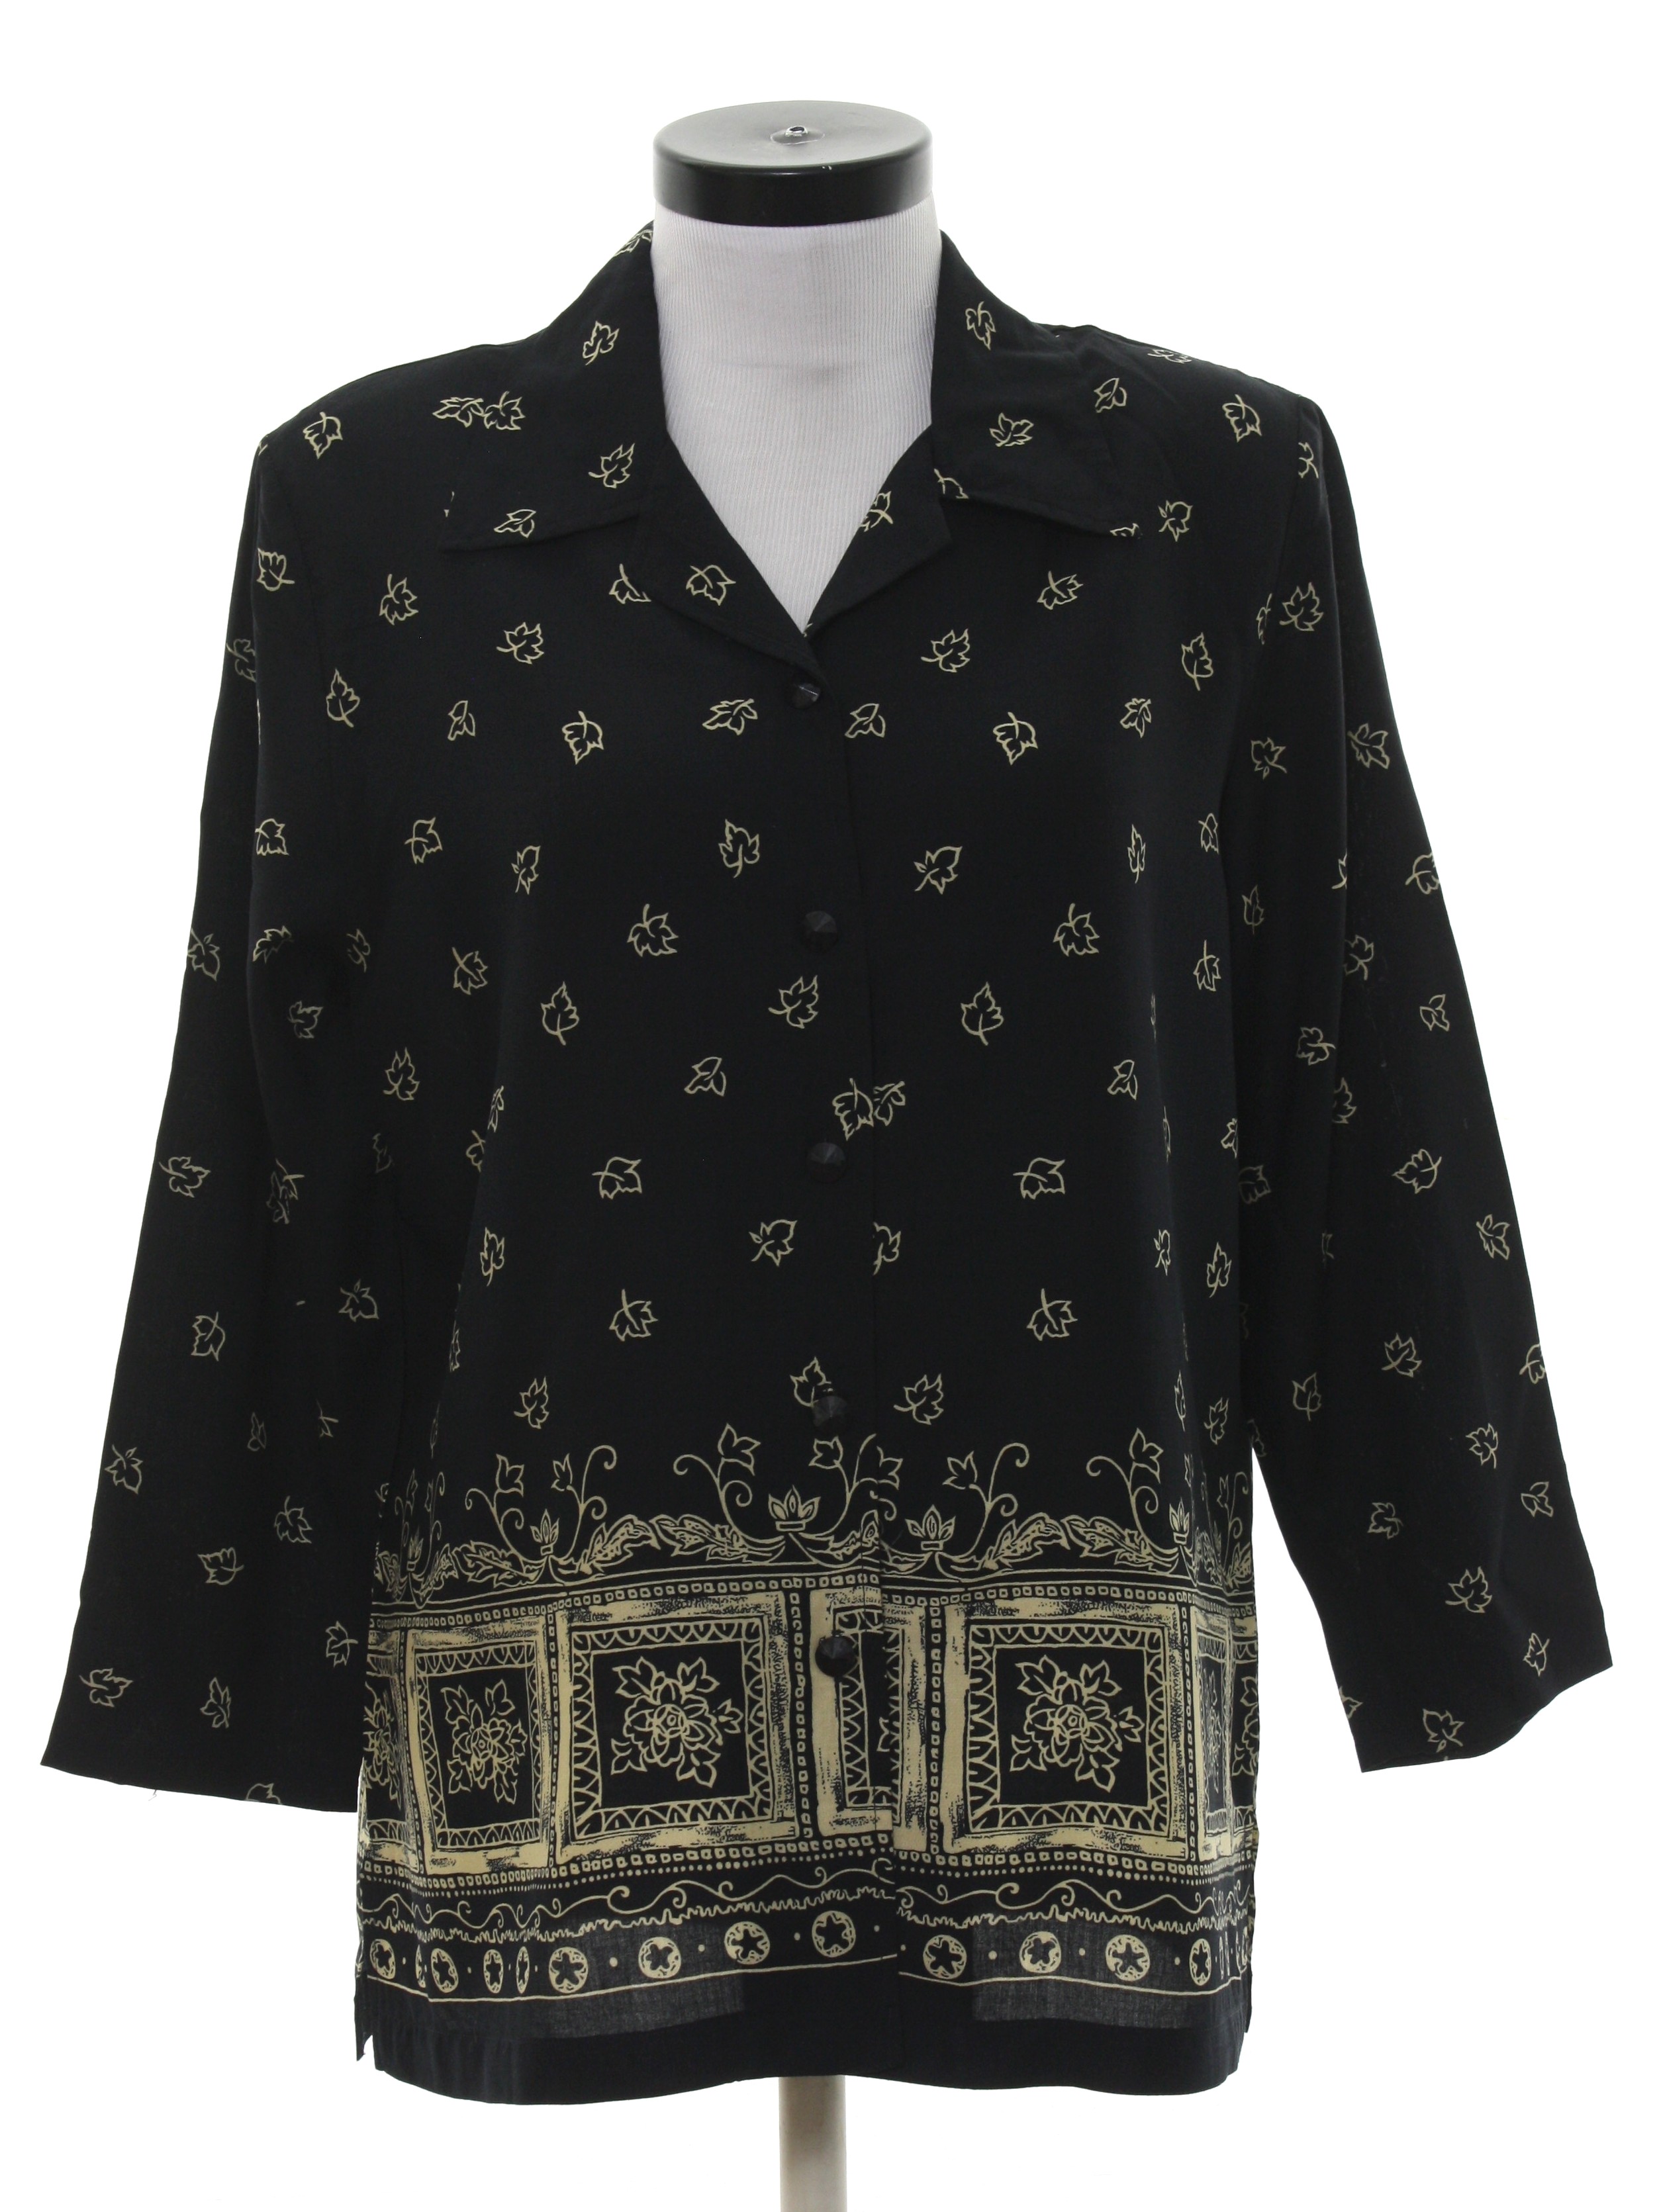 Nineties Blair Shirt: 90s -Blair- Womens black and cream rayon ...